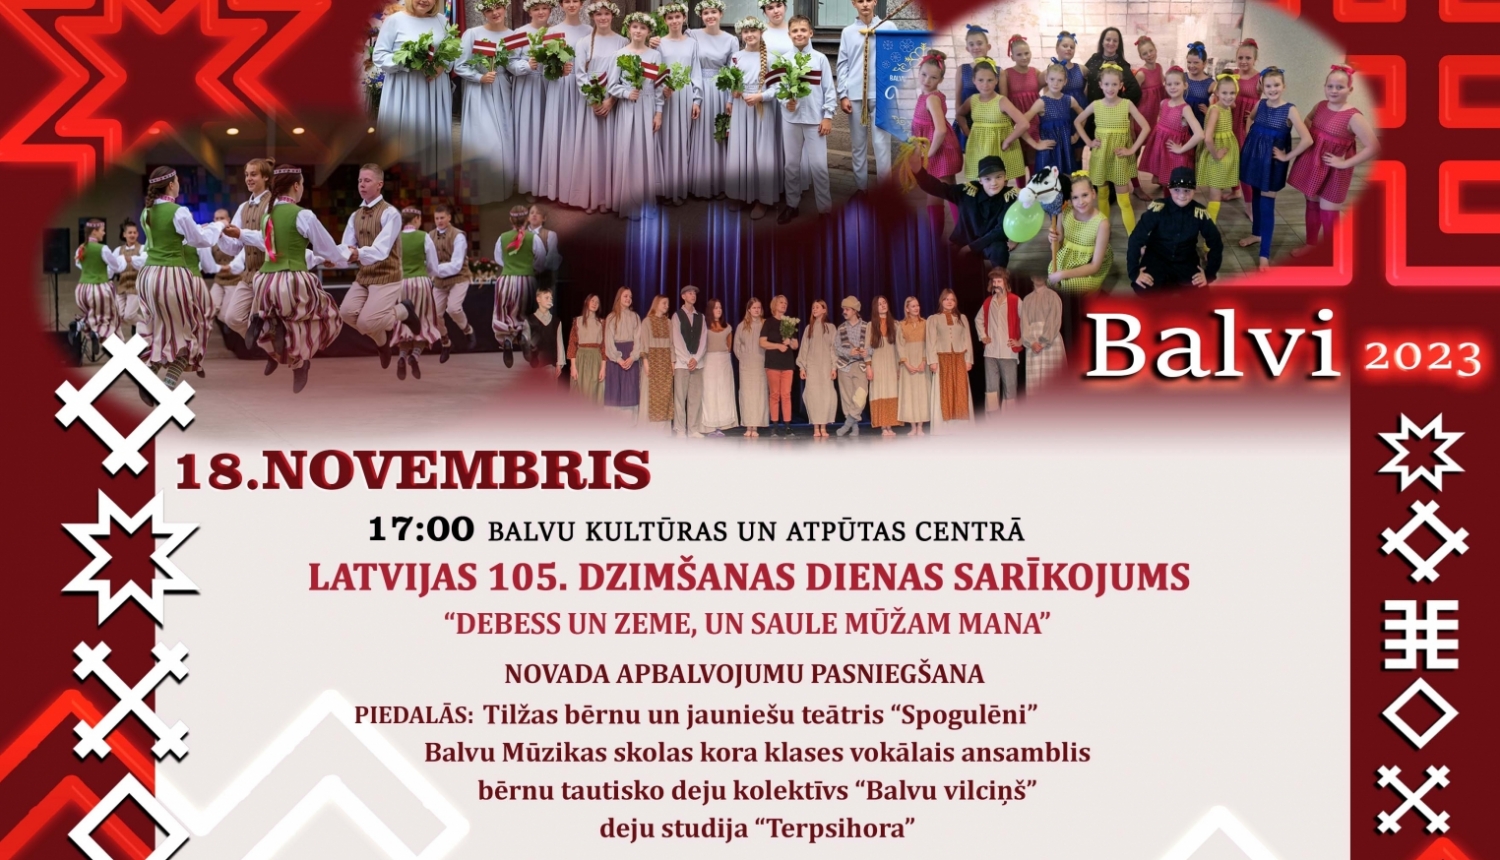 Balvu Mūzikas skolas kora klases vokālais ansamblis piedalīsies Valsts svētku koncertā Balvos